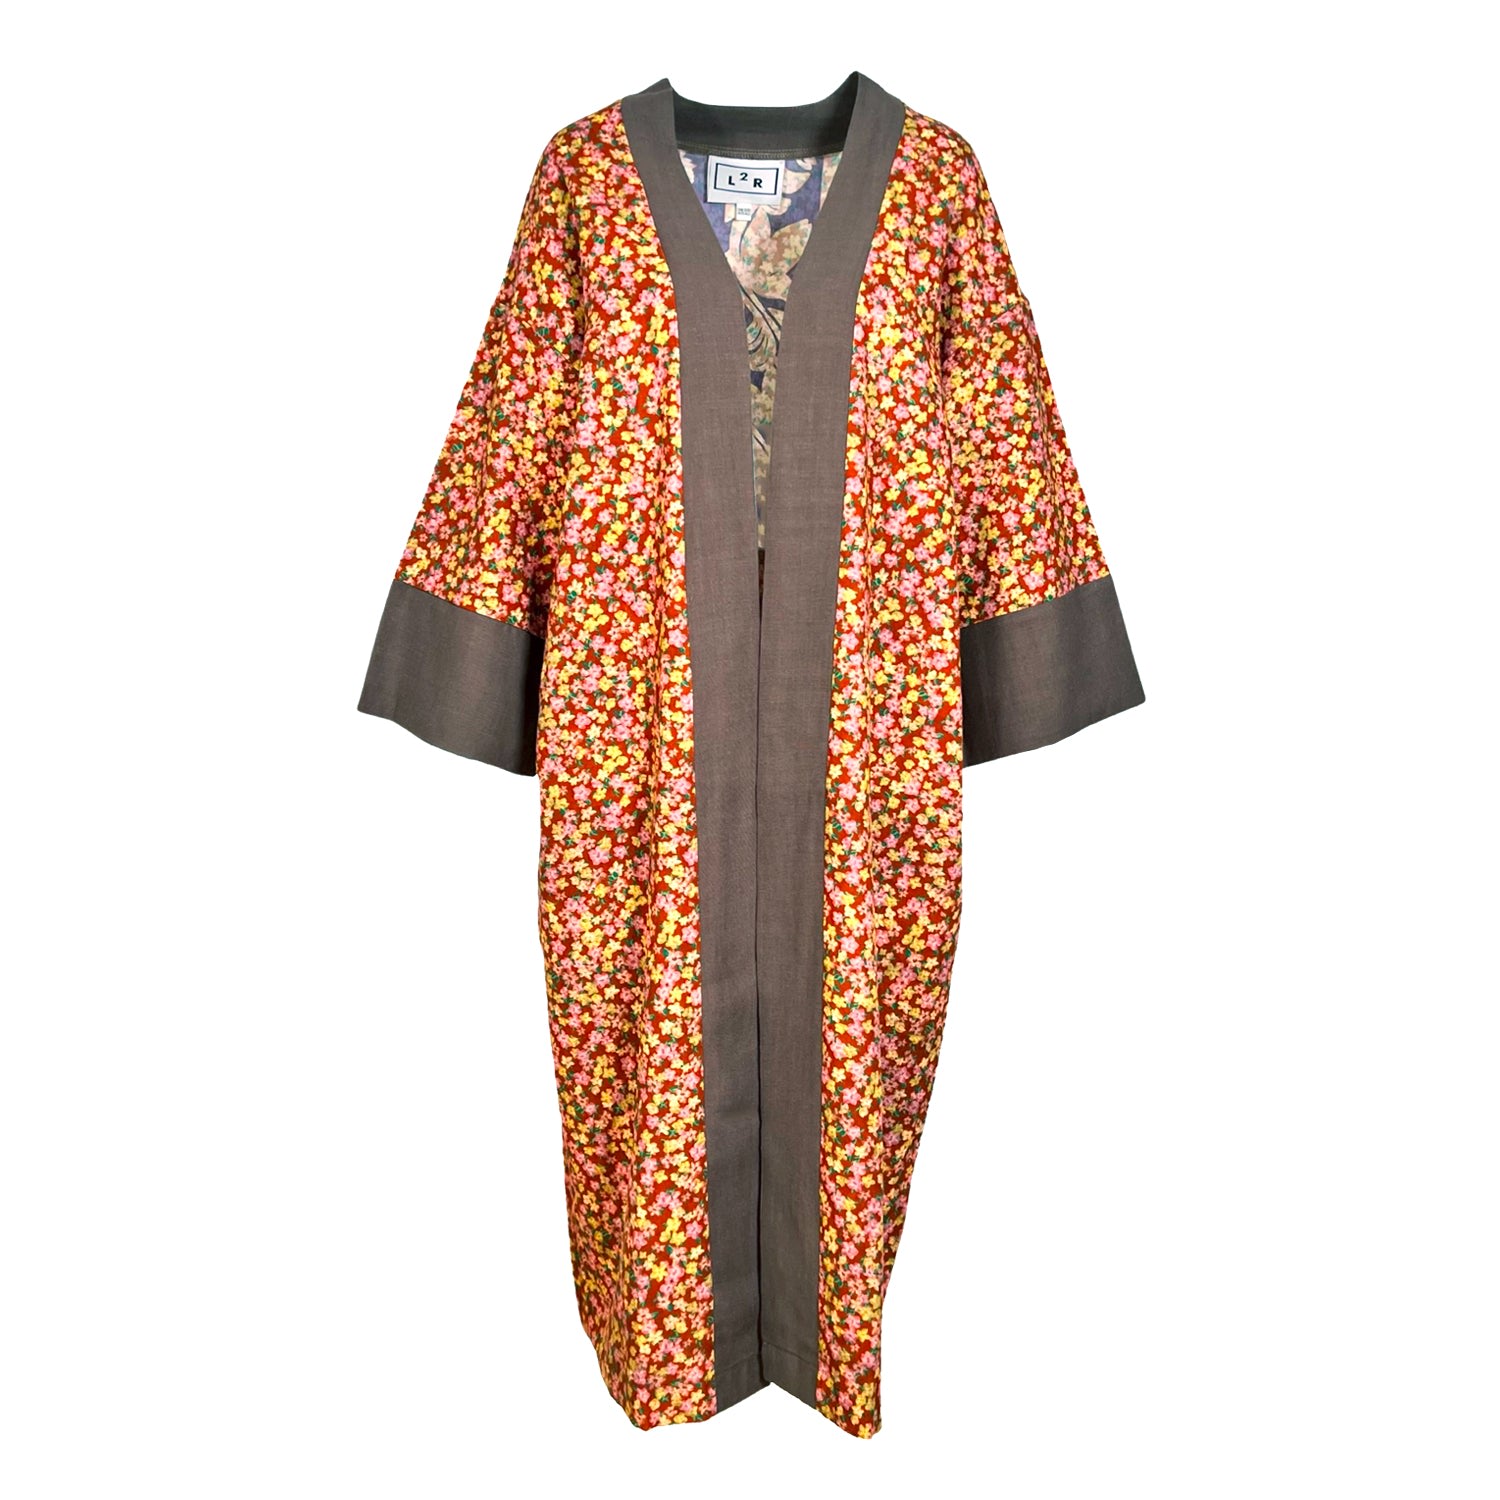 L2r The Label Women's Yellow / Orange / Brown Reversible Kaftan Kimono - Floral Brown Print